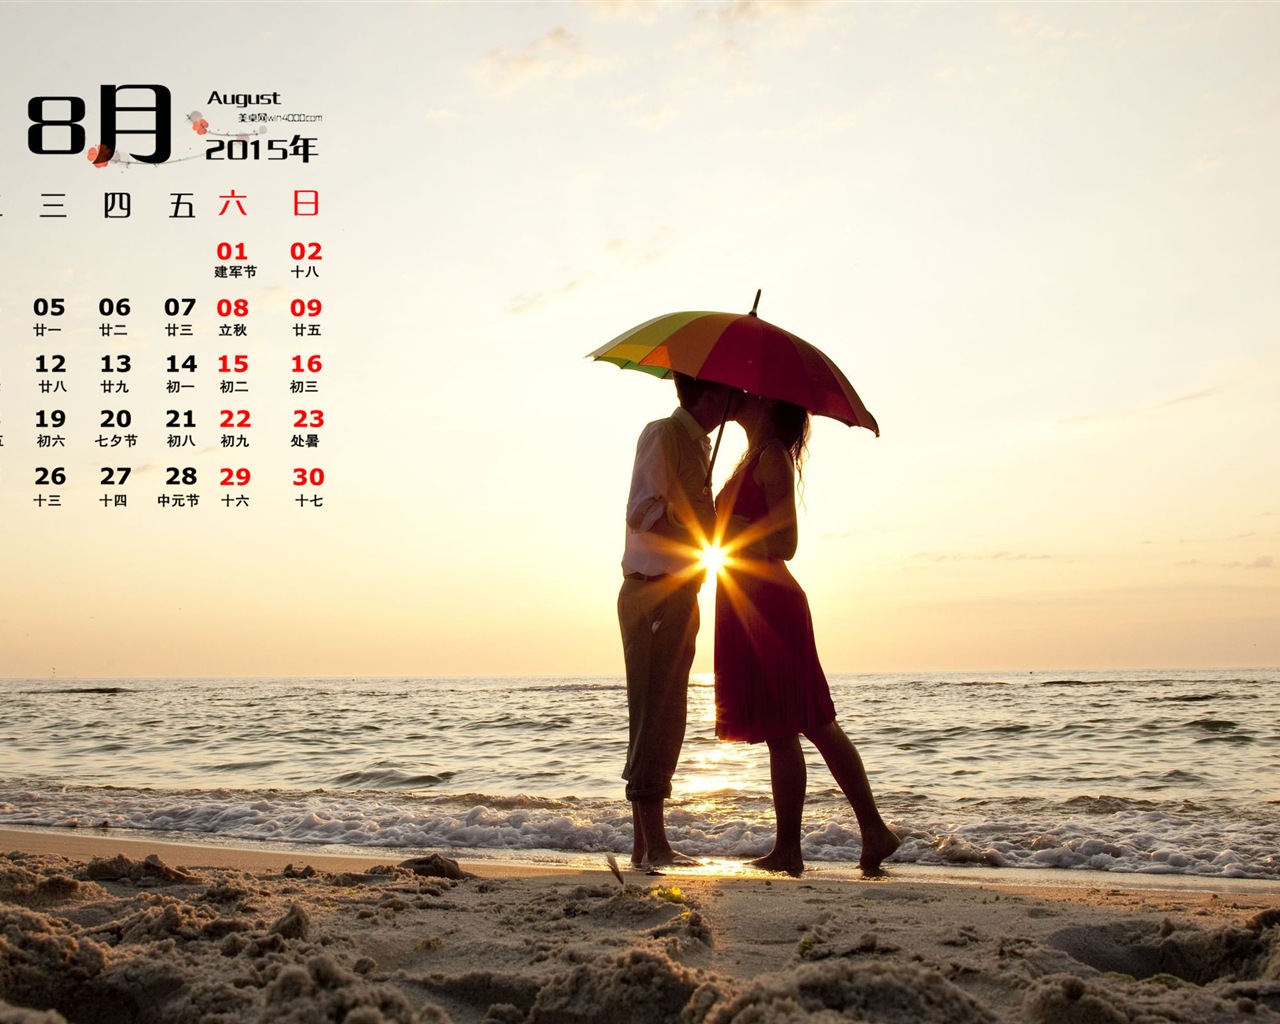 August 2015 calendar wallpaper (1) #14 - 1280x1024